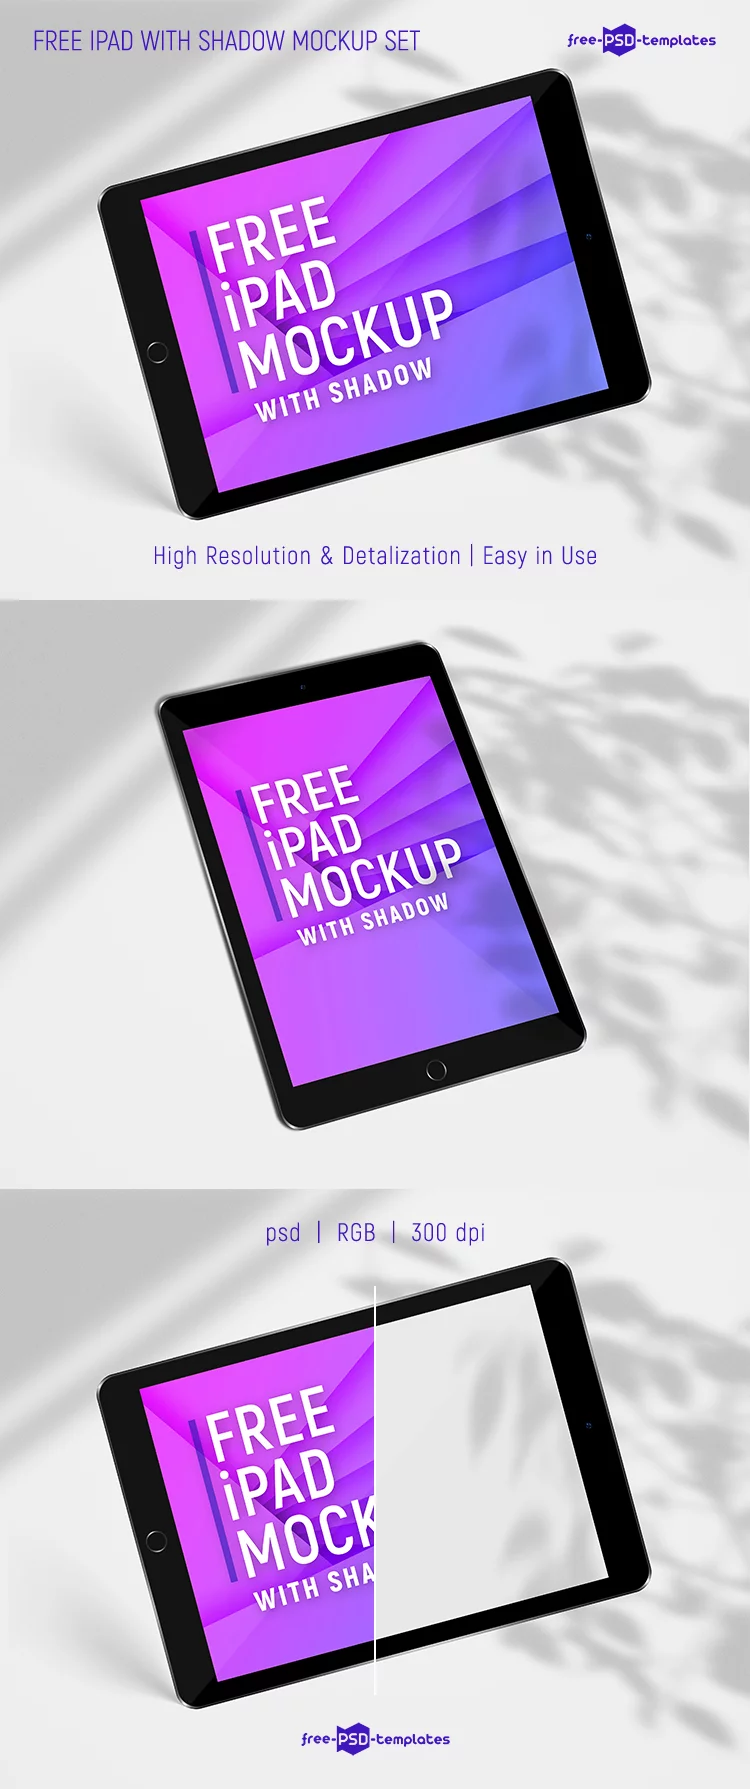 Free iPad screens mockup (PSD)